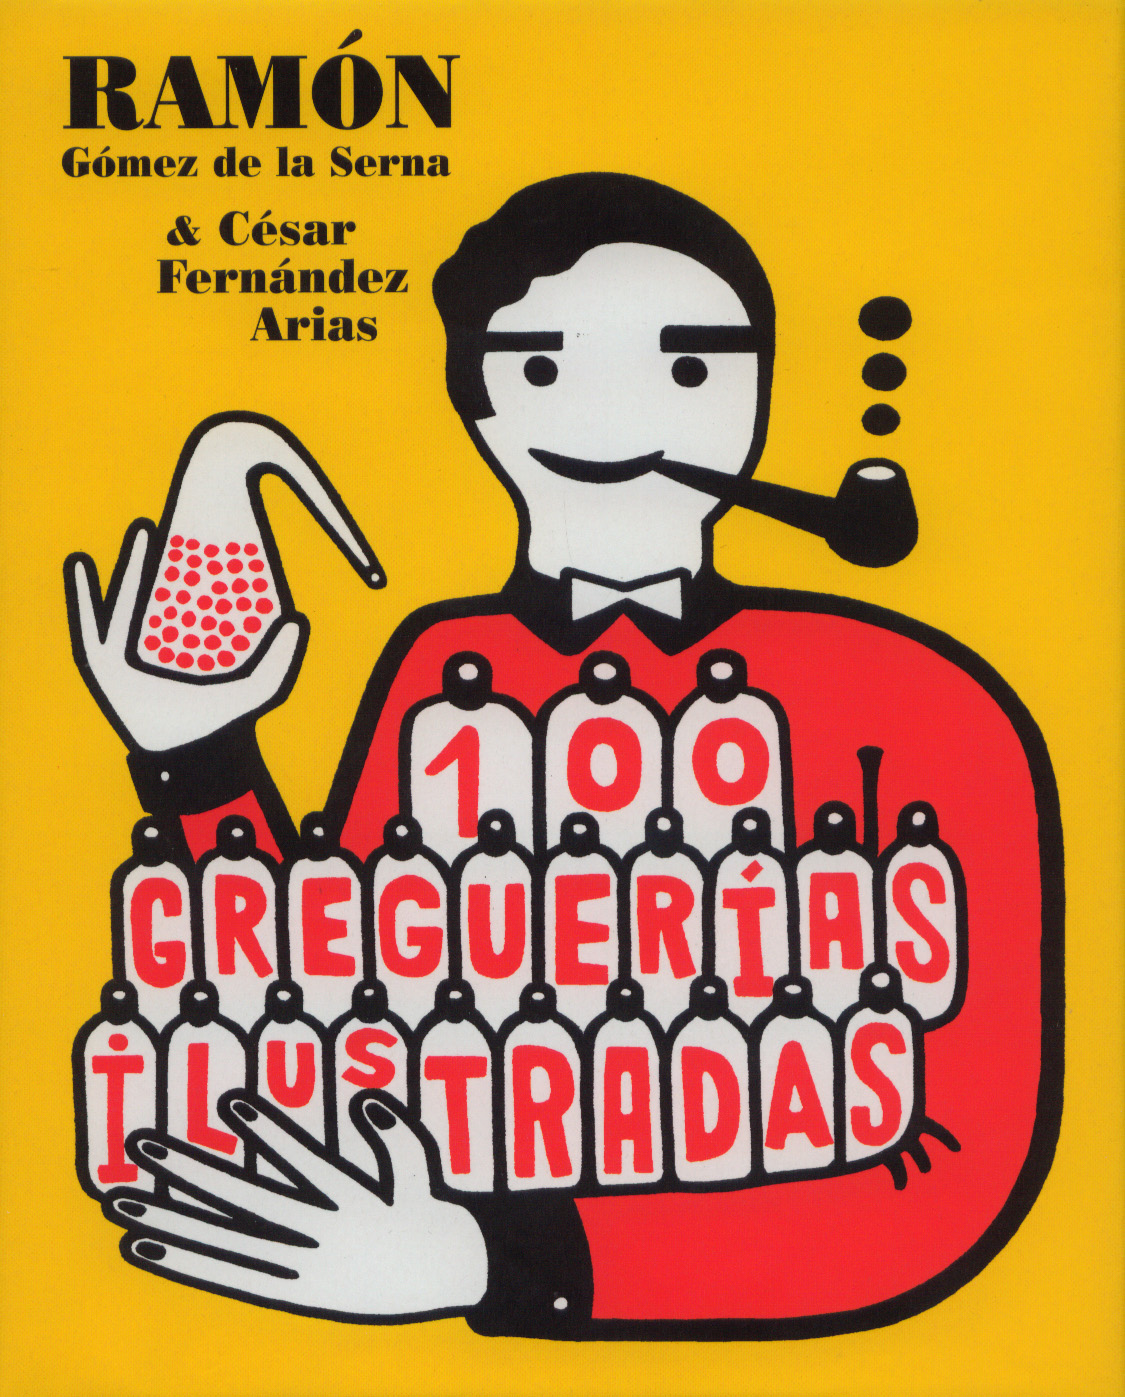 100 Greguerías ilustradas, editado por Media Vaca